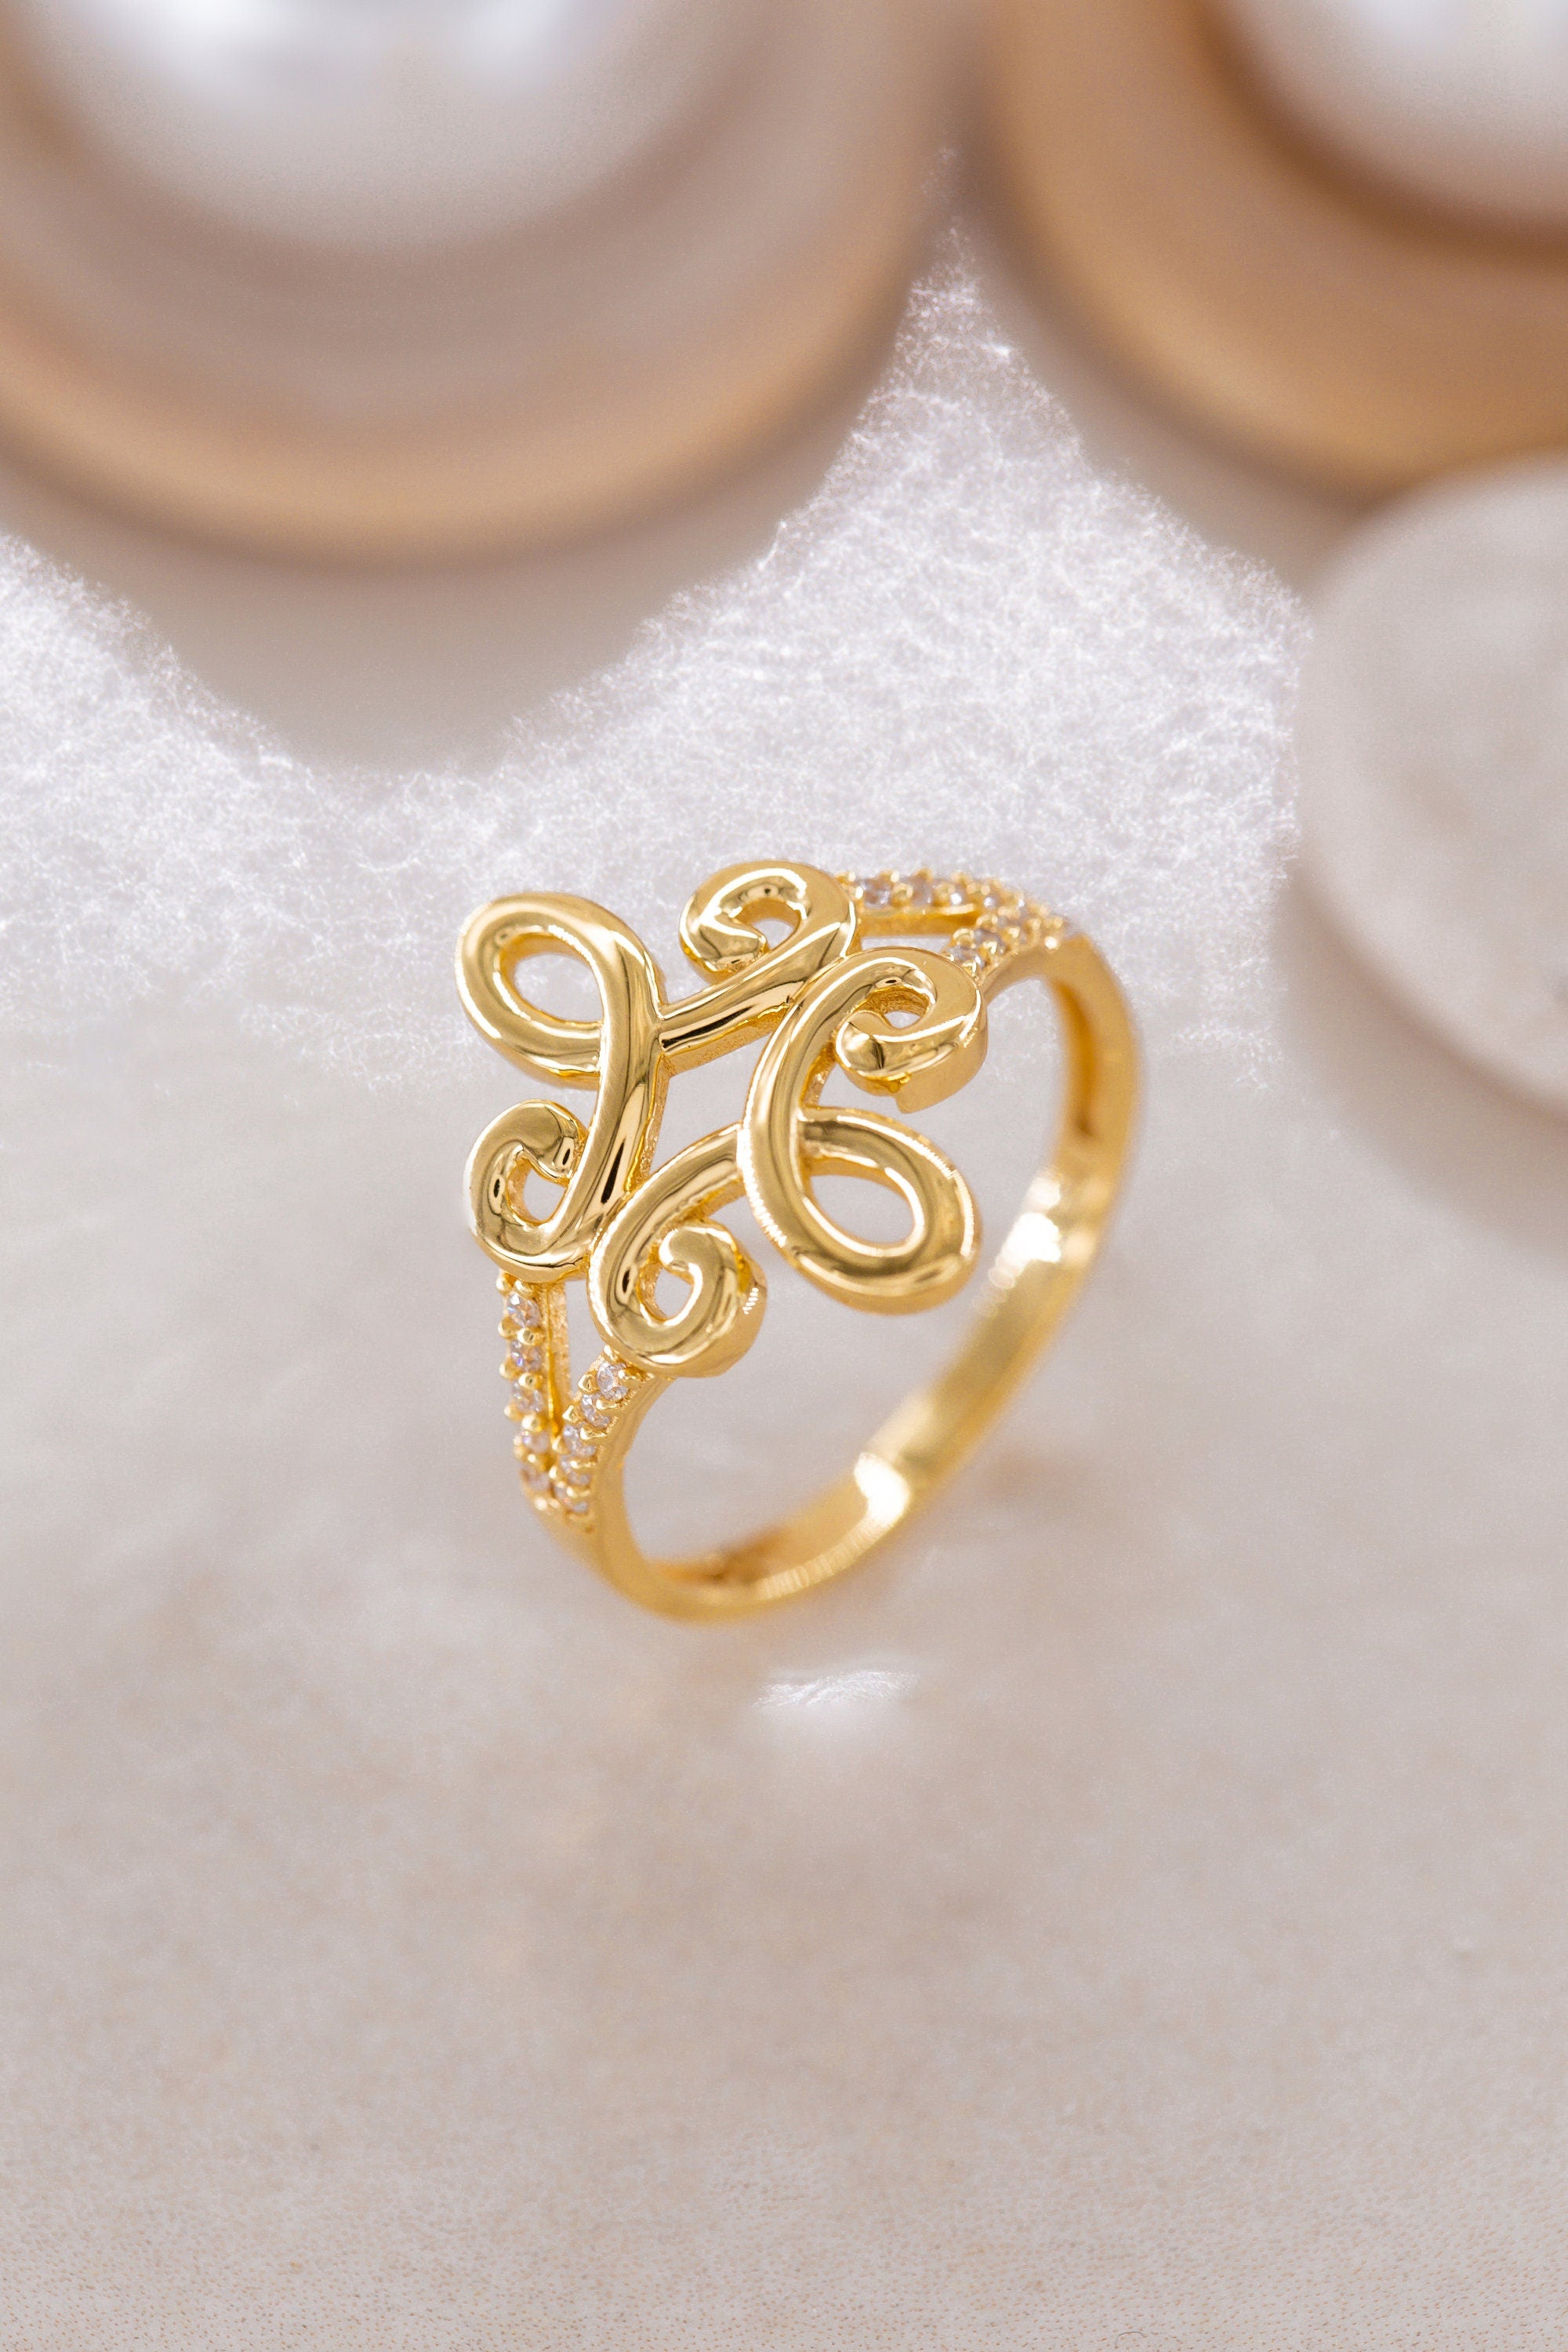 14K Golden Spiral Symbol Ring / Spiral Symbol Design Ring / Ring For Lovers / Spiral Ring / Mini Spiral Ring /Gift For Mother Day